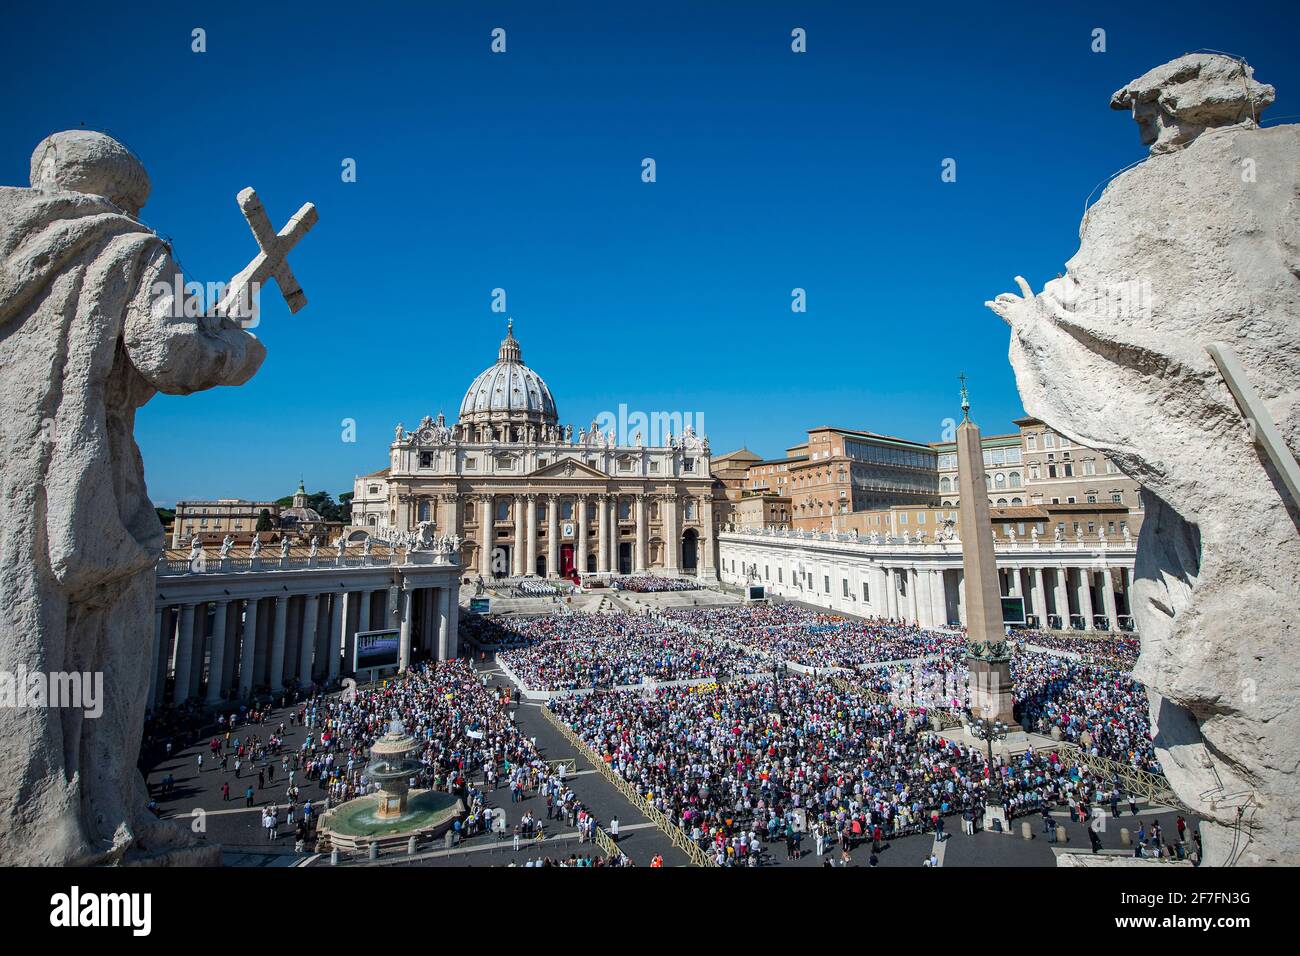 Una vista general de la Plaza de San Pedro y la Basílica de San Pedro durante una Misa que marca el Jubileo para Catequistas, Vaticano, Roma, Lazio, Italia Foto de stock